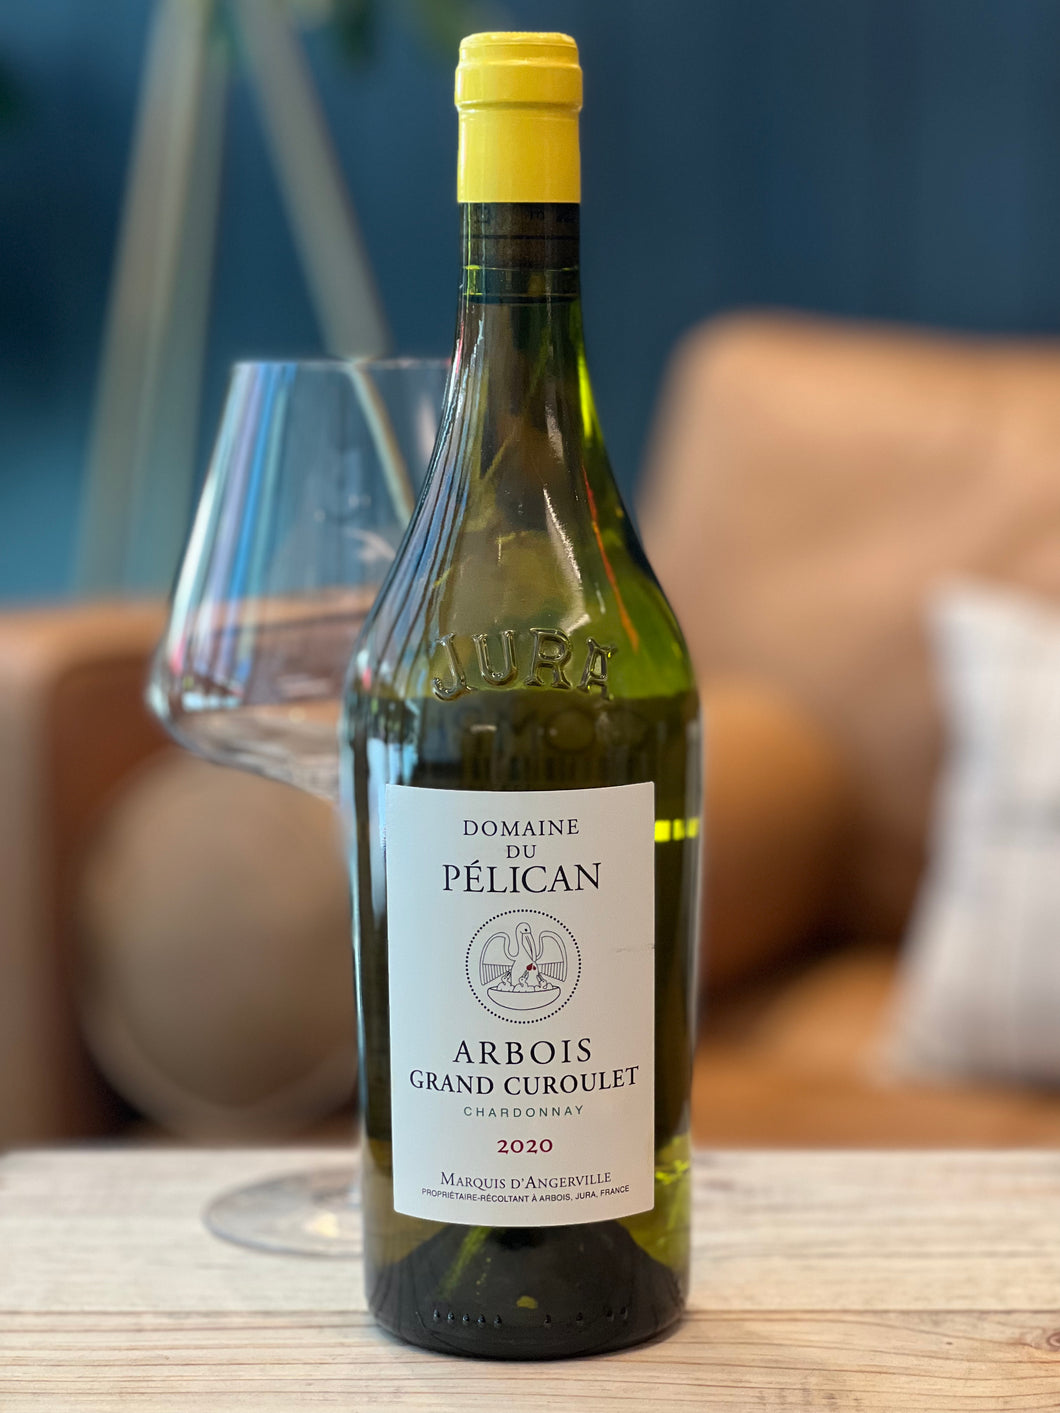 Arbois Chardonnay, Domaine du Pélican “Grand Curoulet” 2020